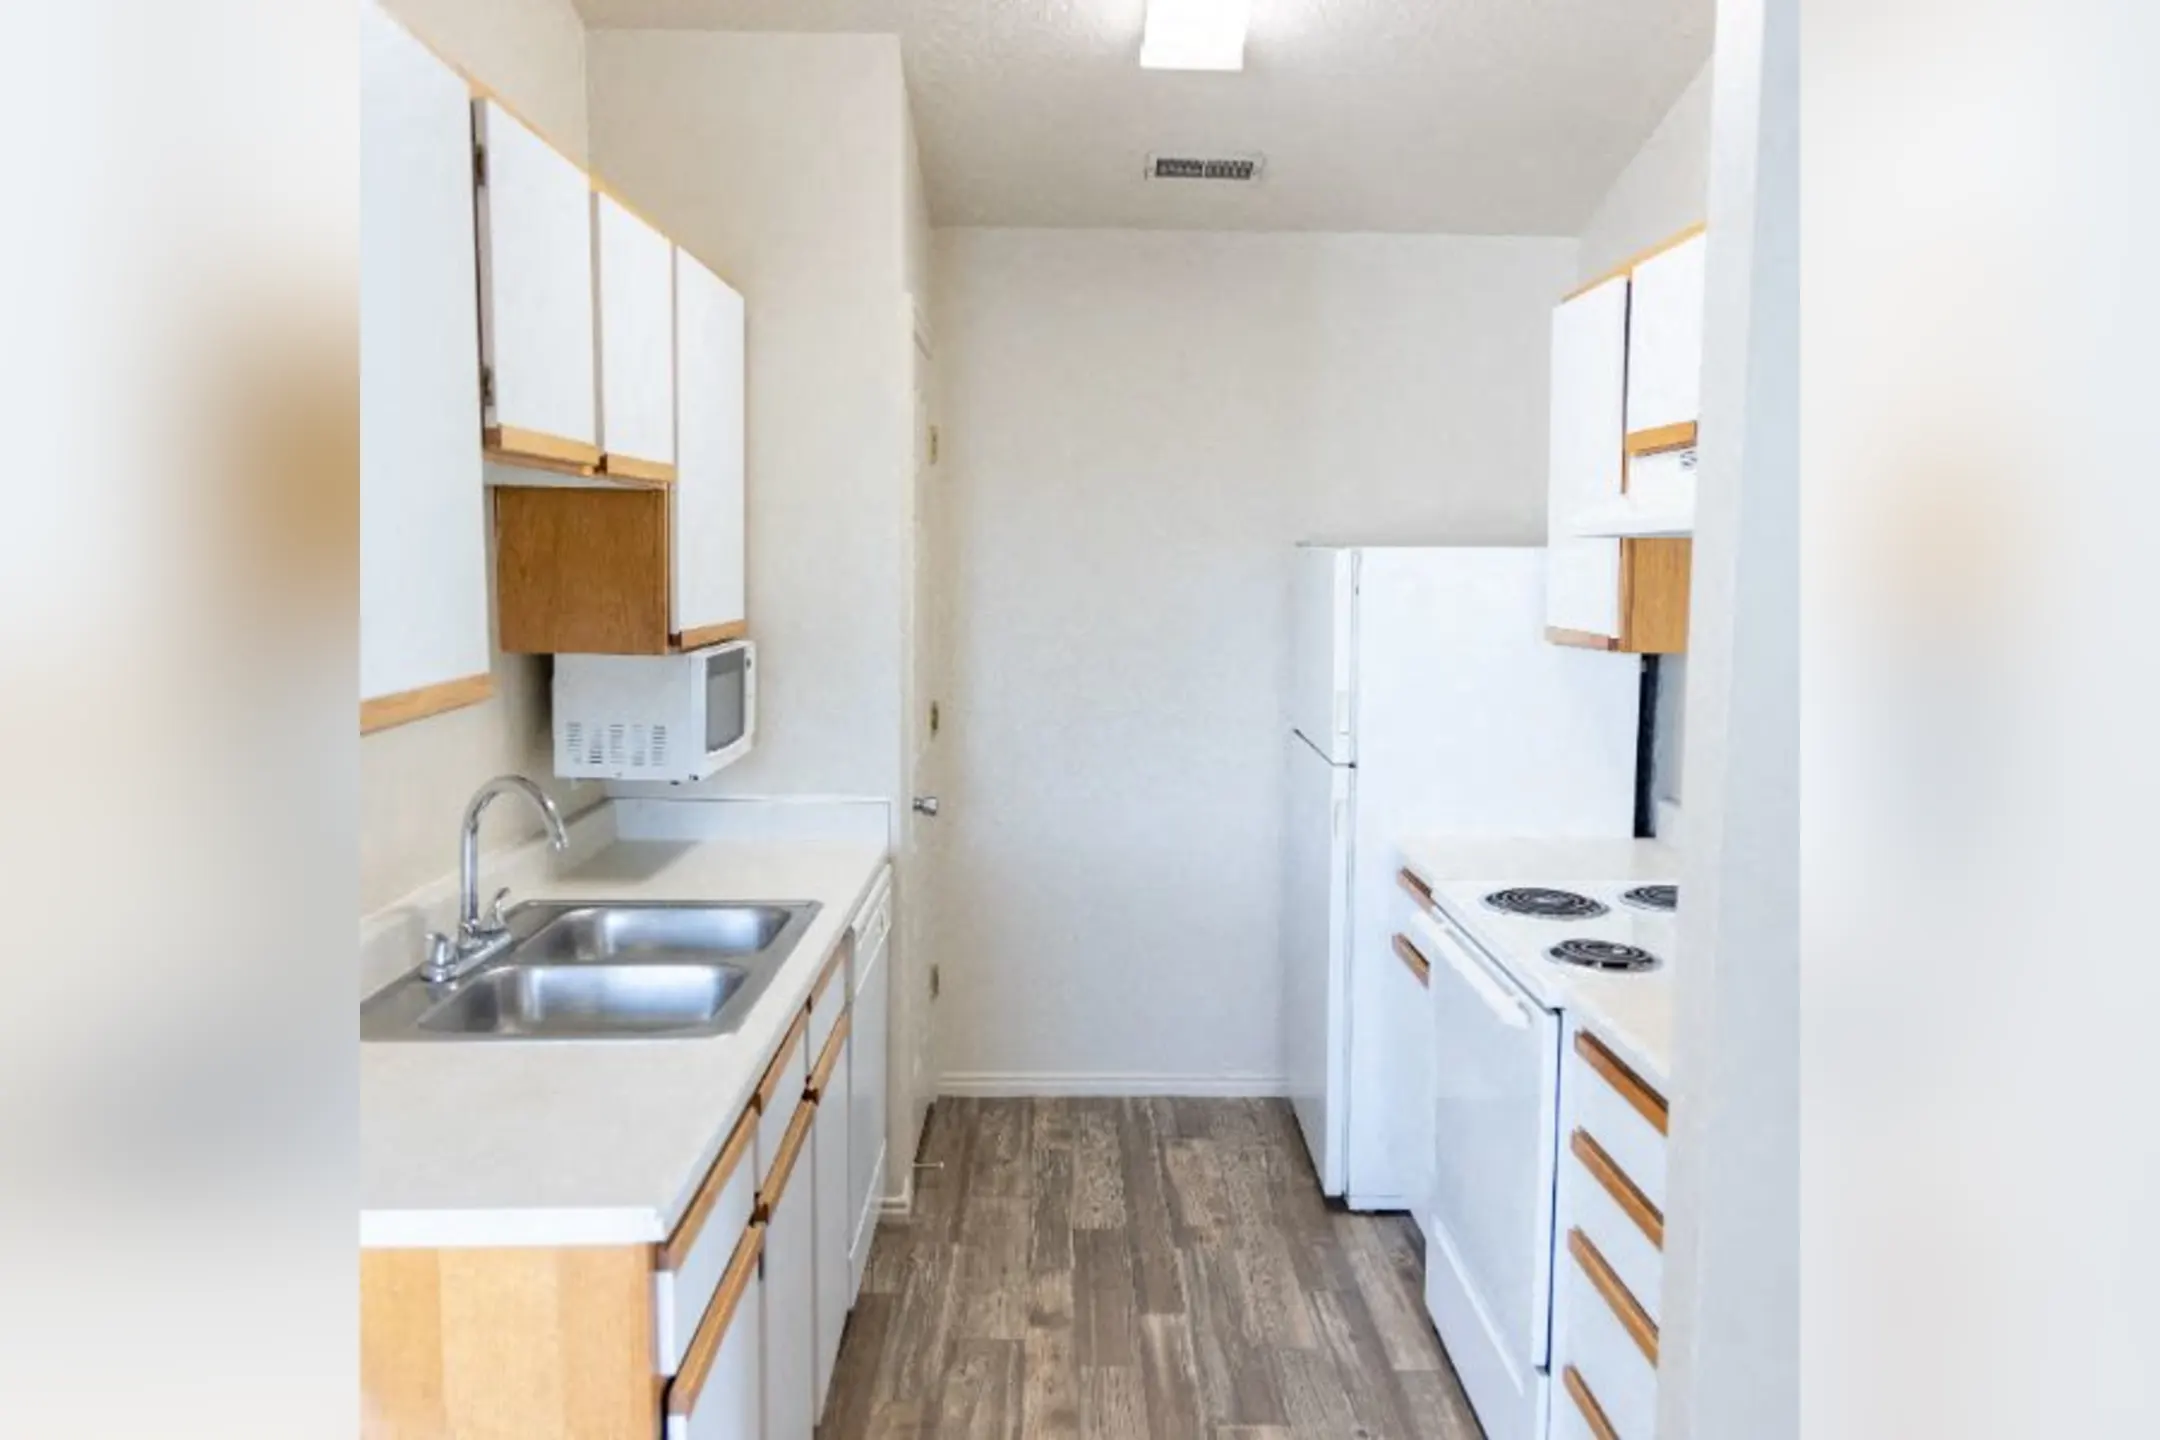 Kitchen - Haven Pointe Apartments - Ogden, UT